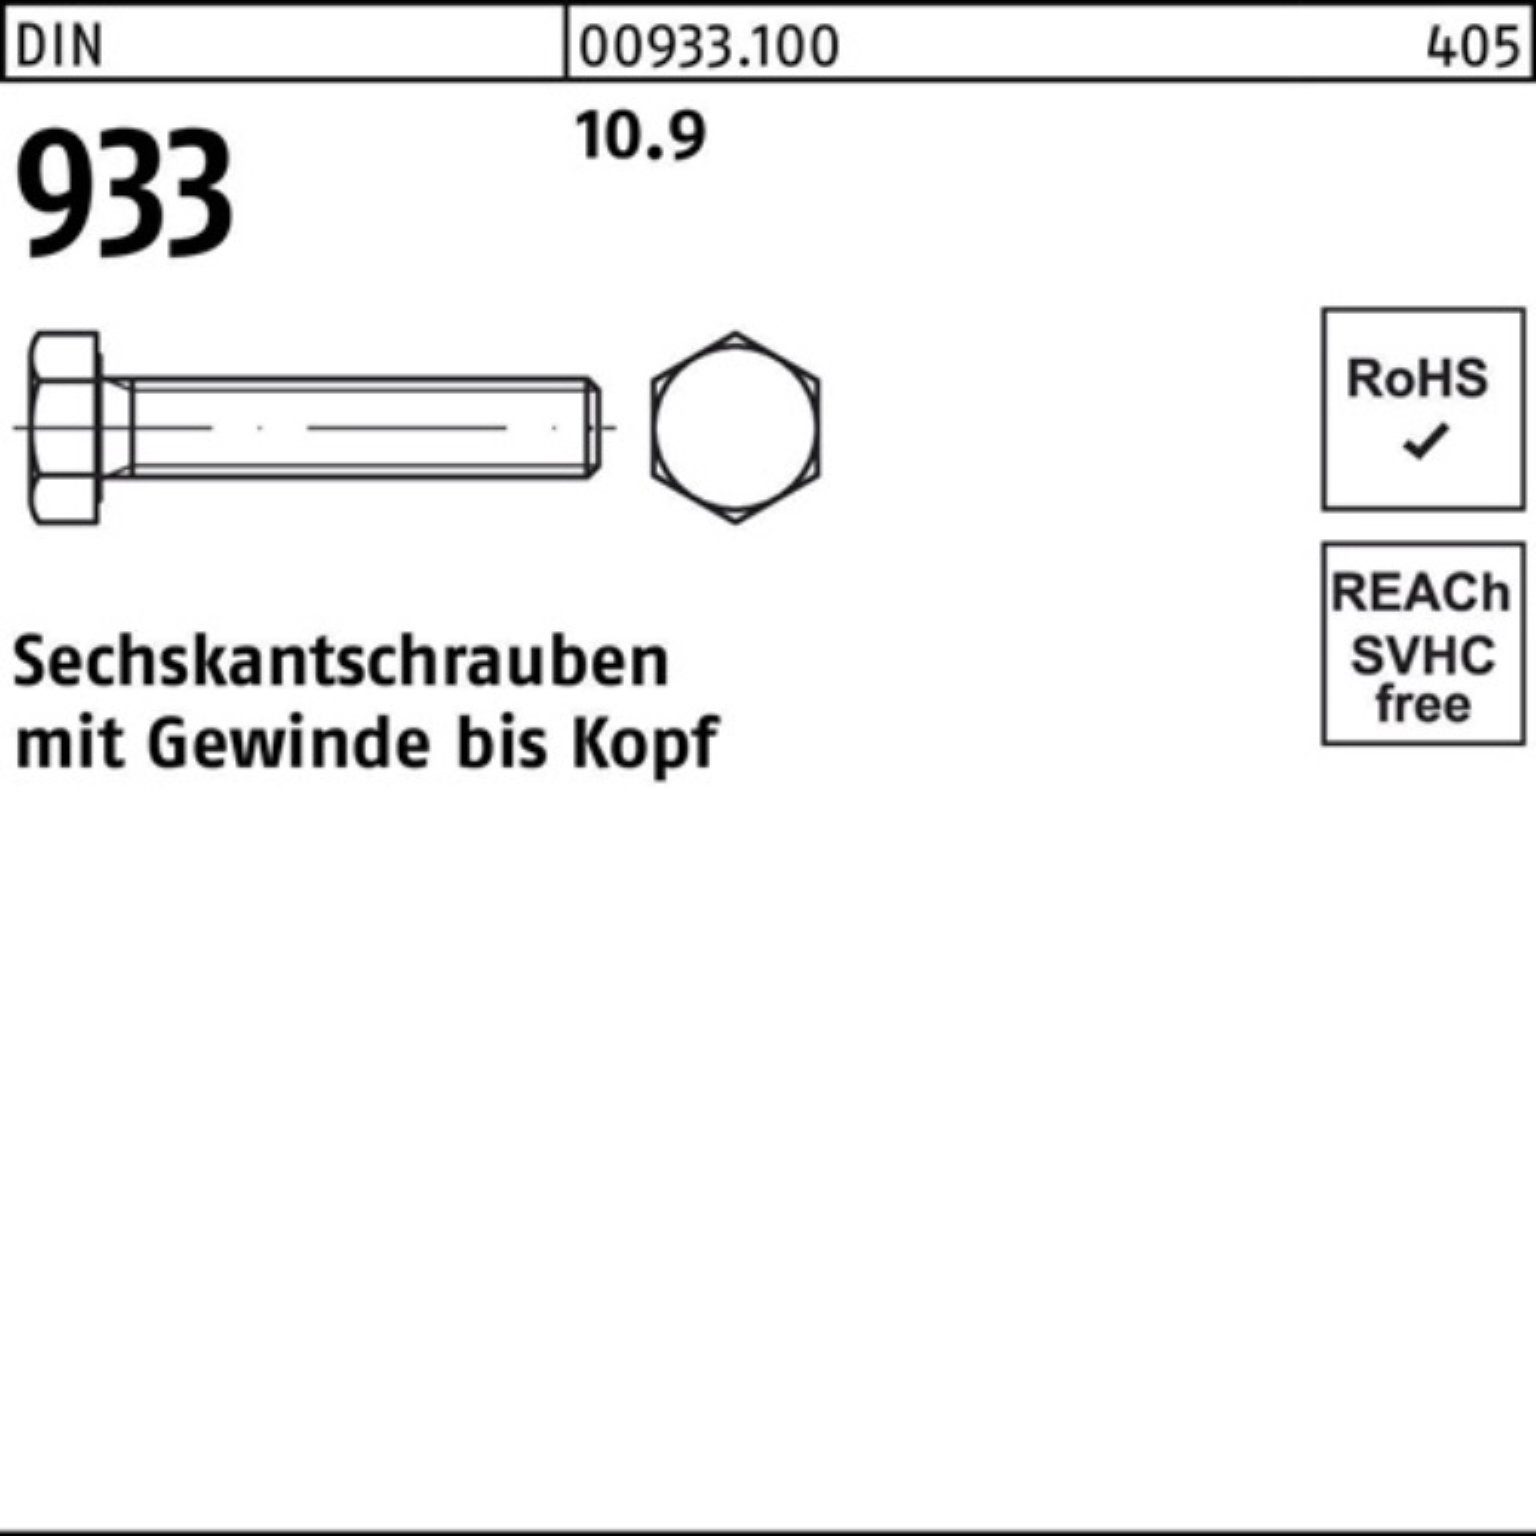 933 25 M20x 180 Pack 100er Sechskantschraube VG DIN DIN Stück Sechskantschraube Reyher 93 10.9